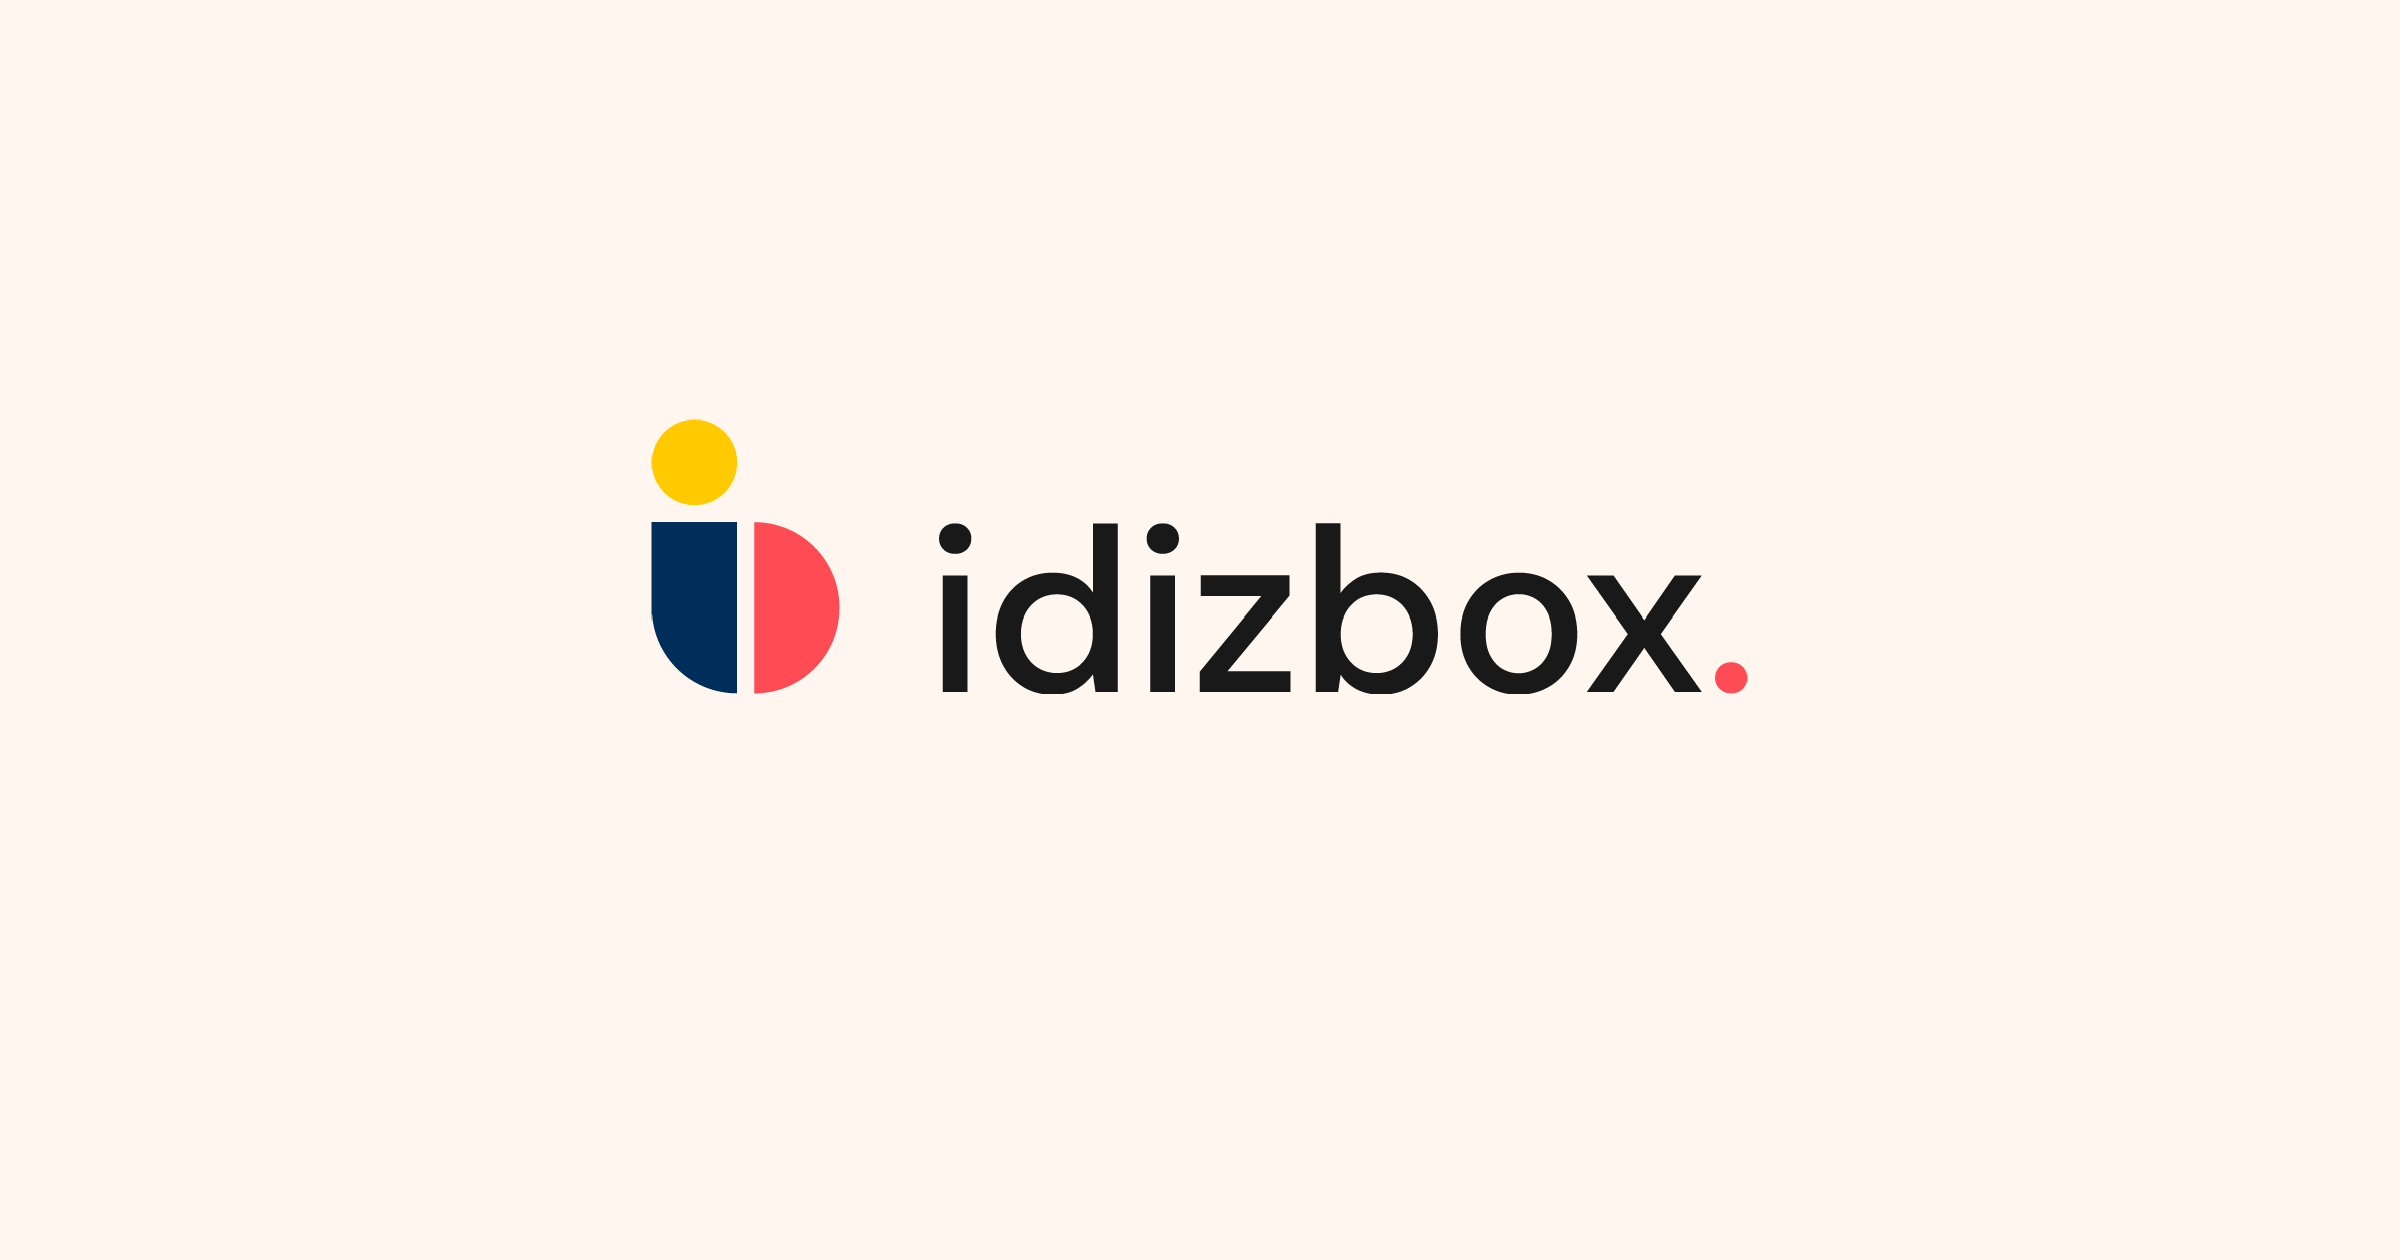 (c) Idizbox.com